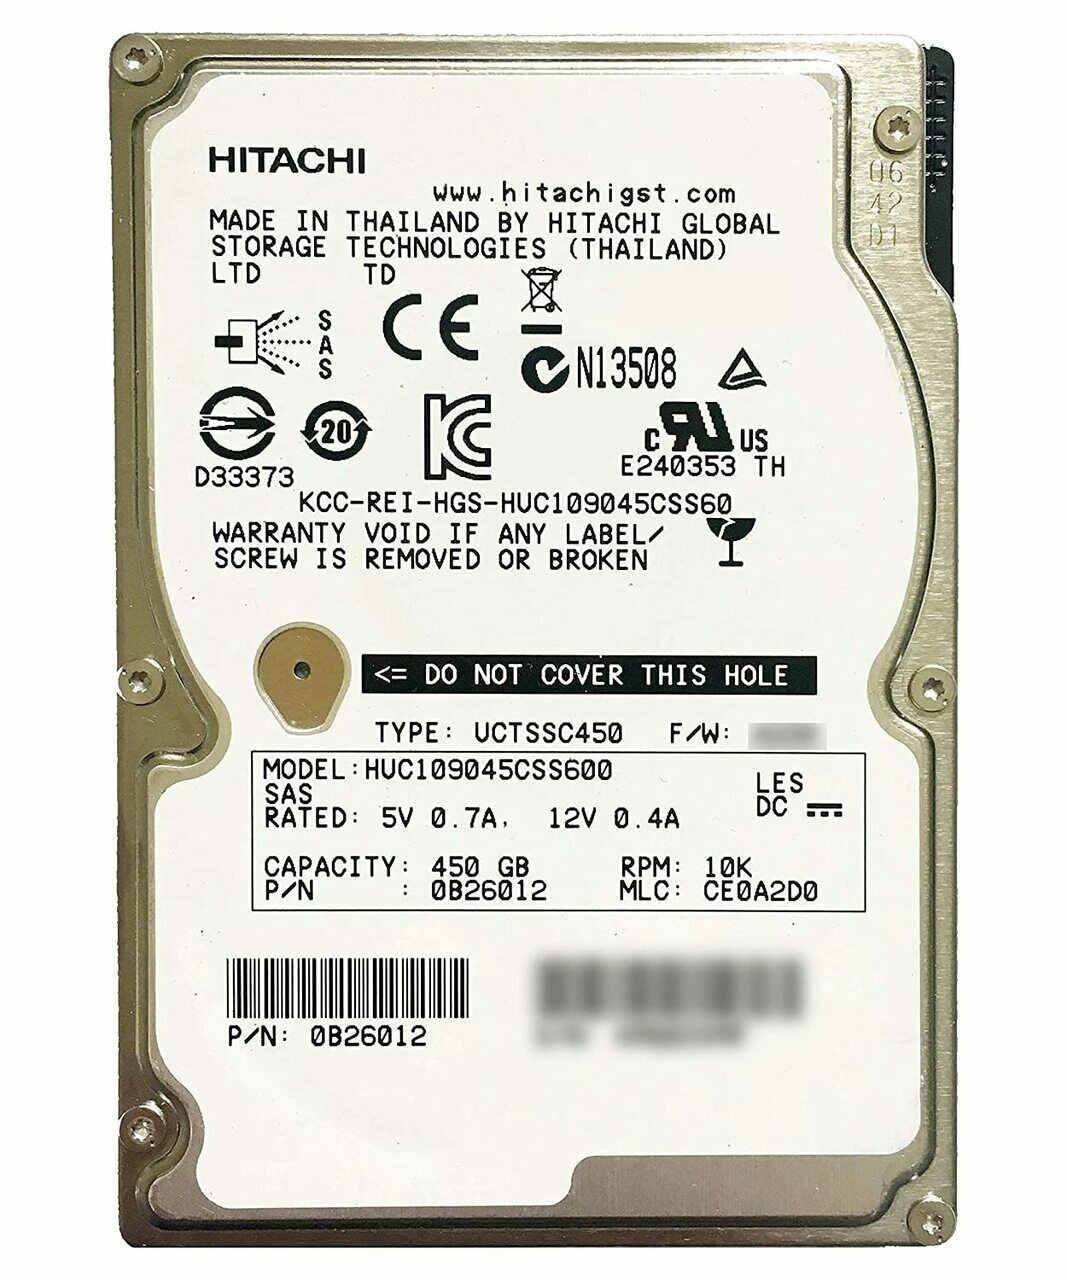 Lot of 10 Hitachi HGST 450GB HDD 10KRPM 64MB 2.5 HUC109045CSS600 0b26012 dell HP